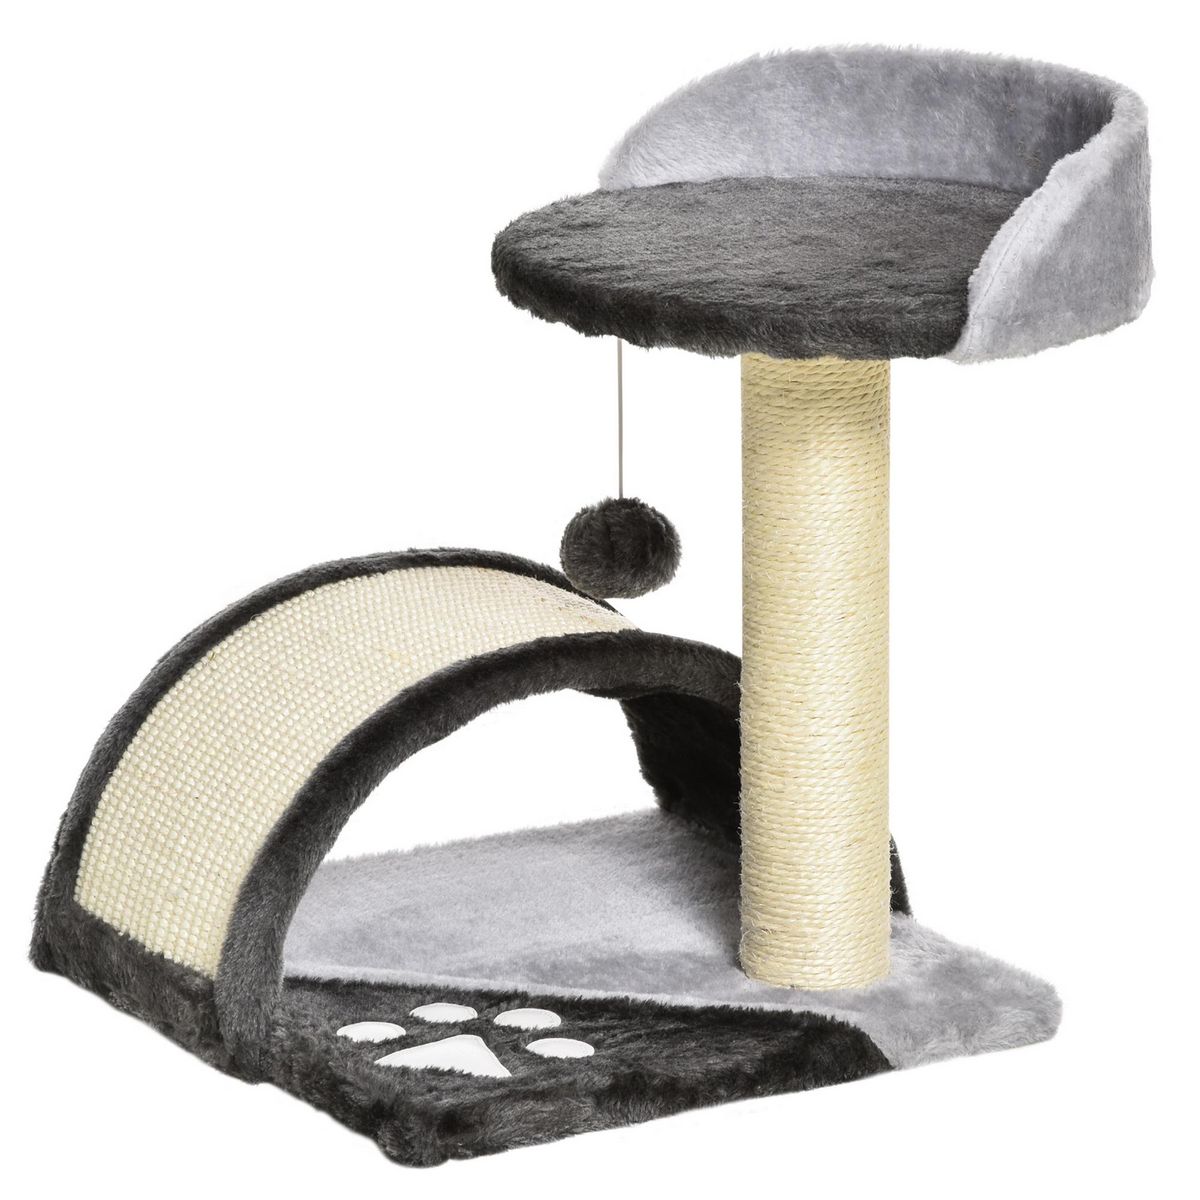 PAWHUT Arbre à chat griffoir grattoir design jeu boule suspendue + plateforme peluche sisal naturel gris